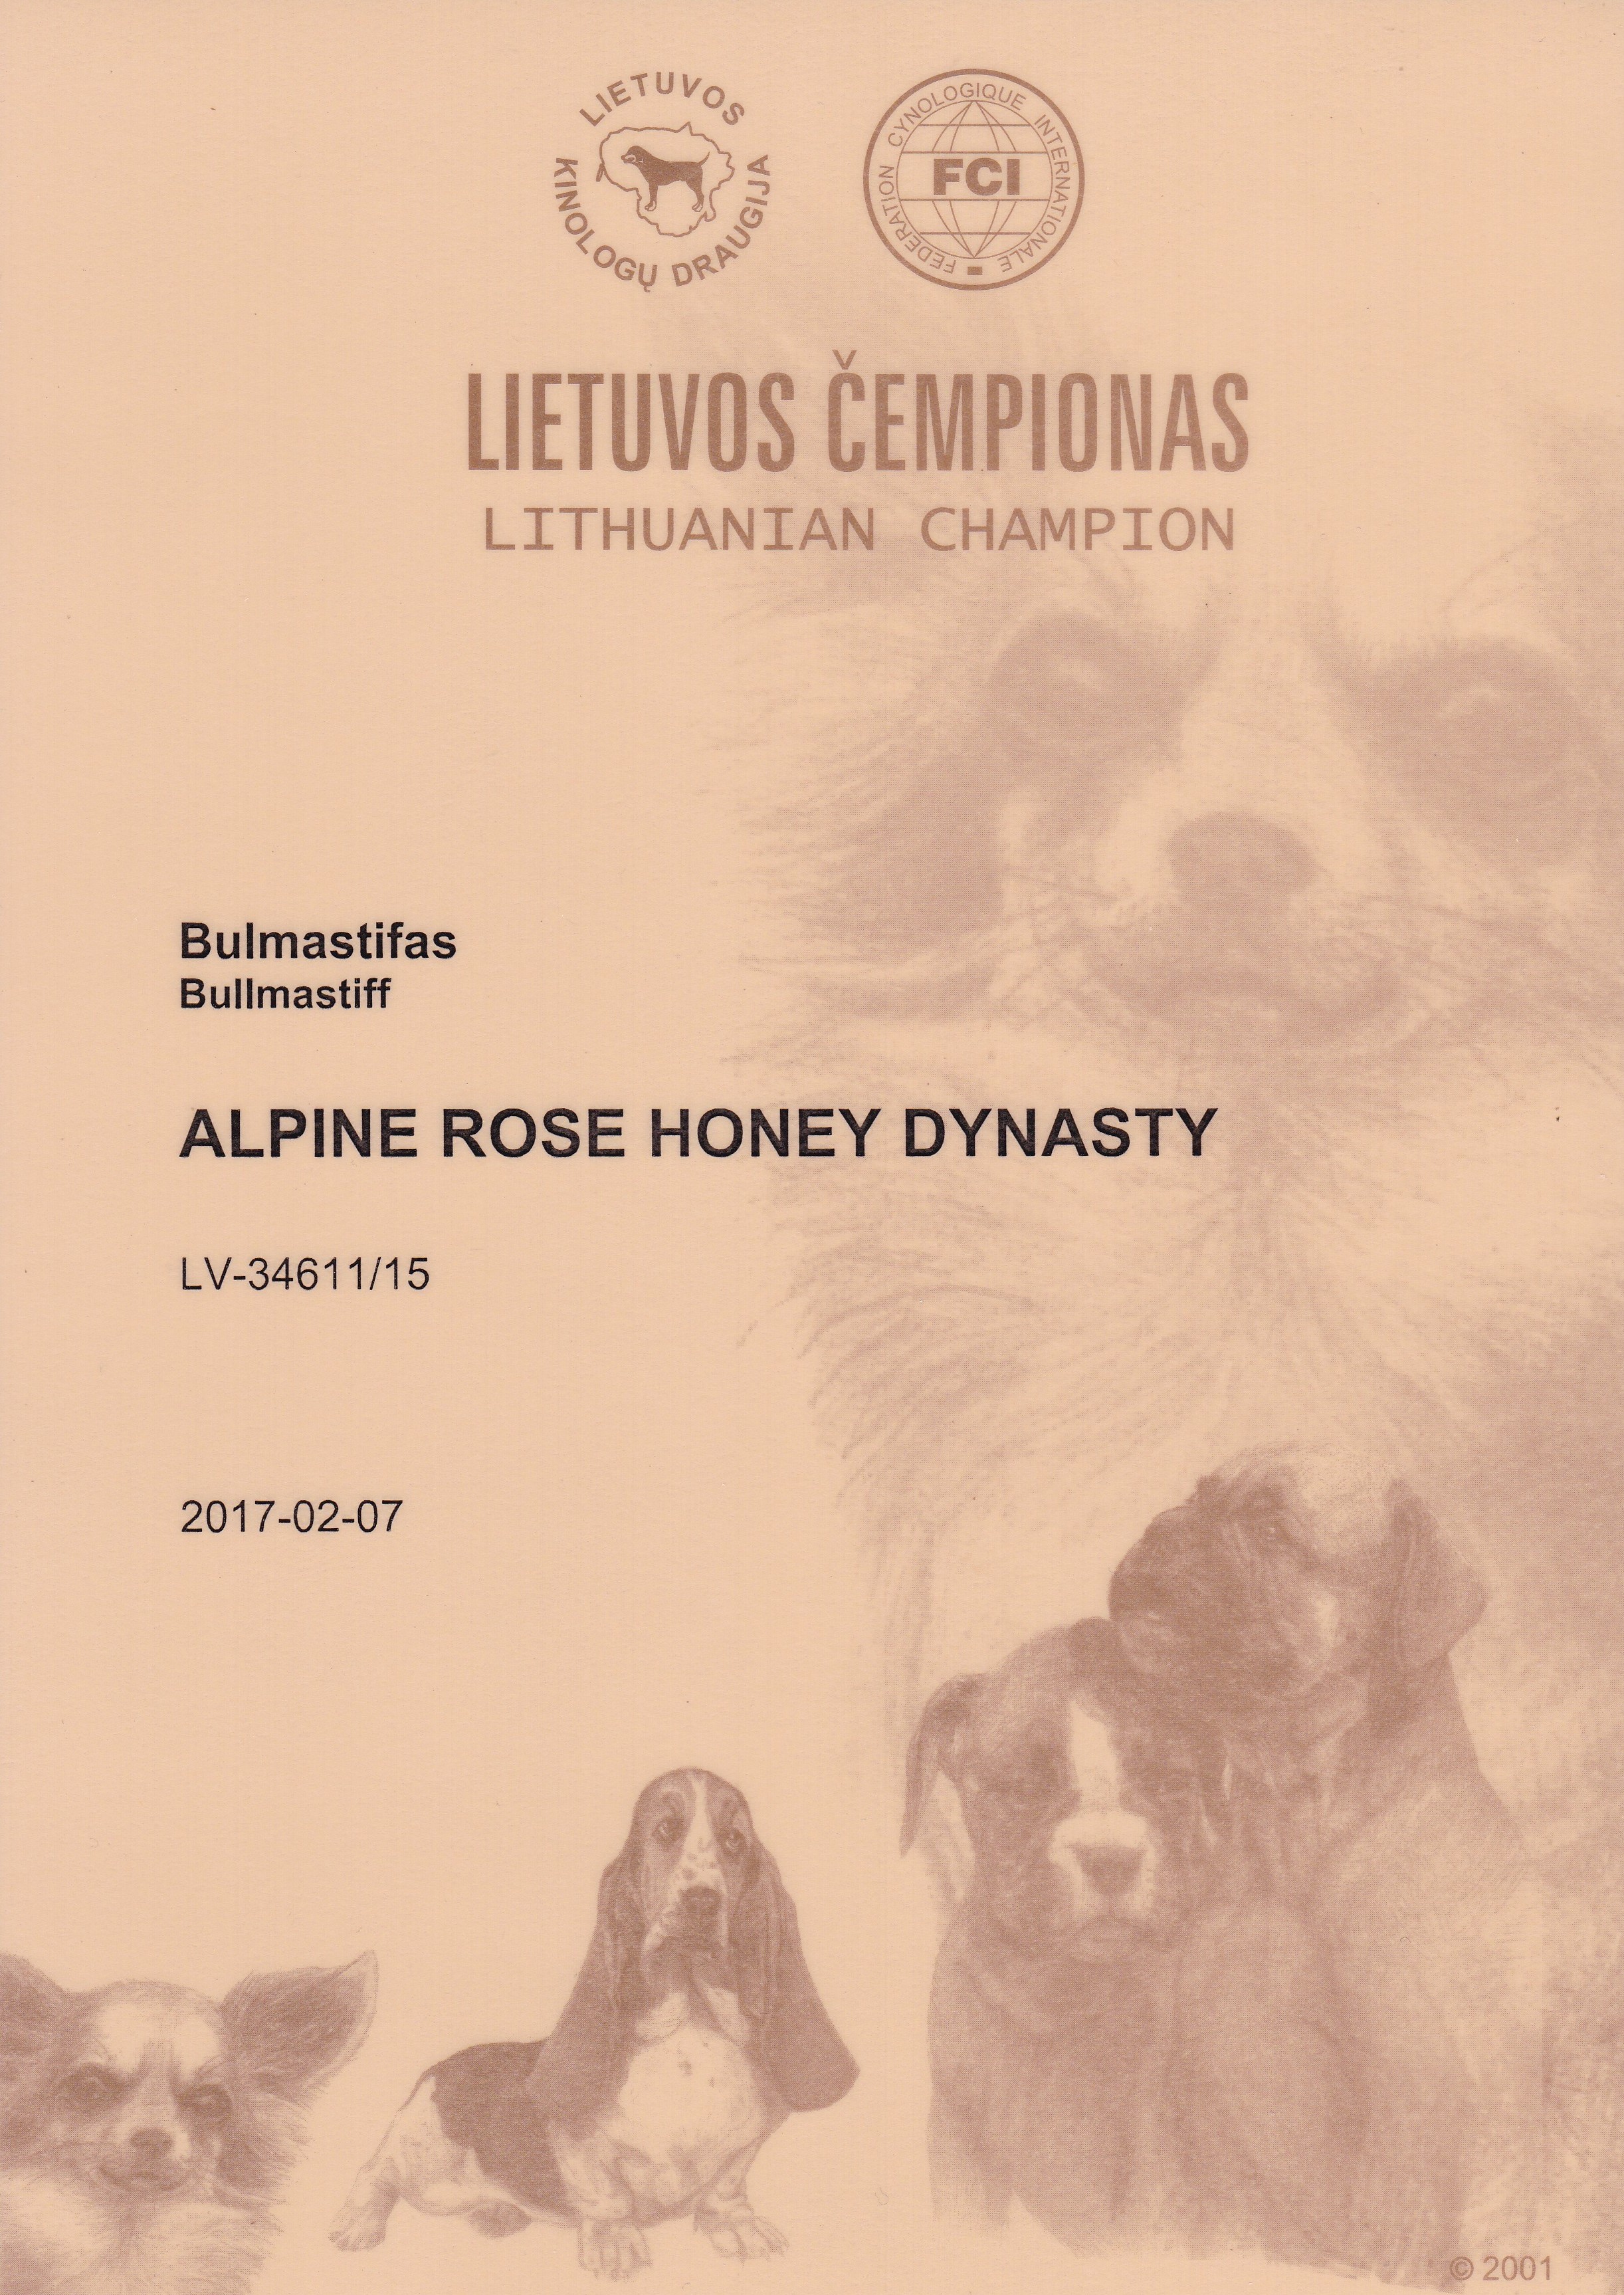 Alpine Rose Honey Dynasty Dogs Honey Dynasty Bullmastiffs From Latvia